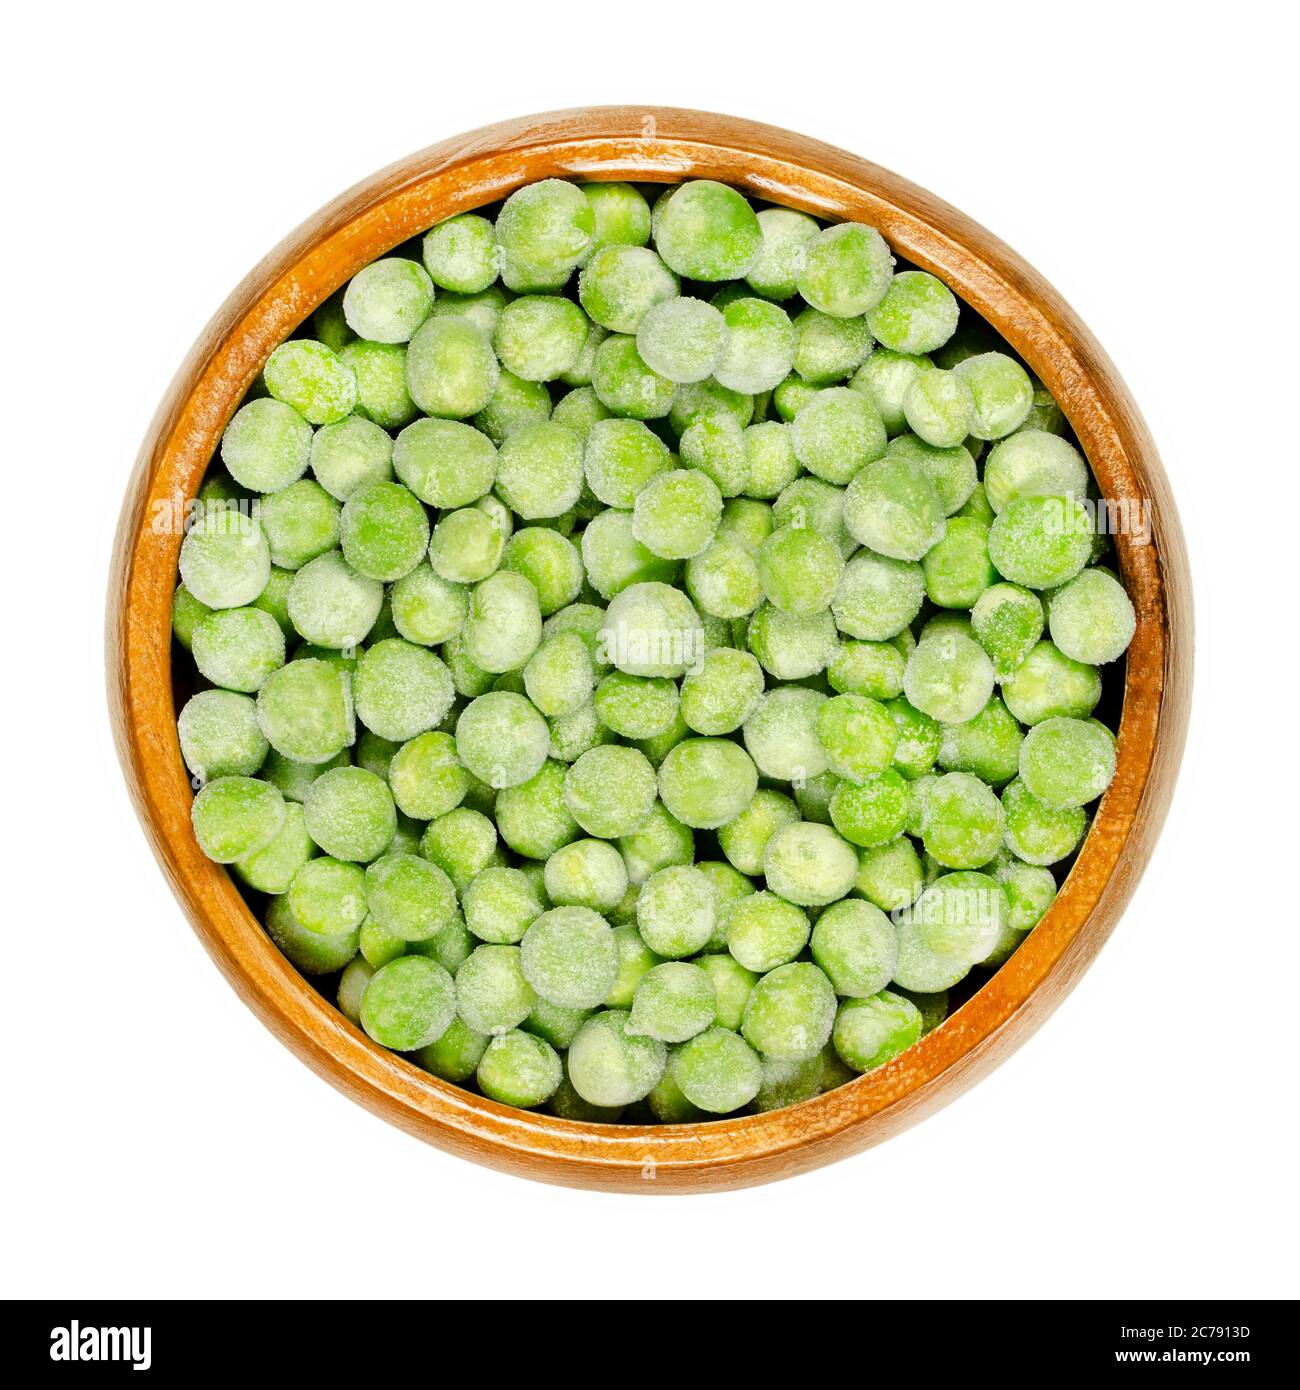 Pois verts congelés dans un bol en bois. Petites graines sphériques de la gousse de fruits Pisum sativum, congelées pour garder les légumineuses fraîches. Gros plan, par le dessus. Banque D'Images